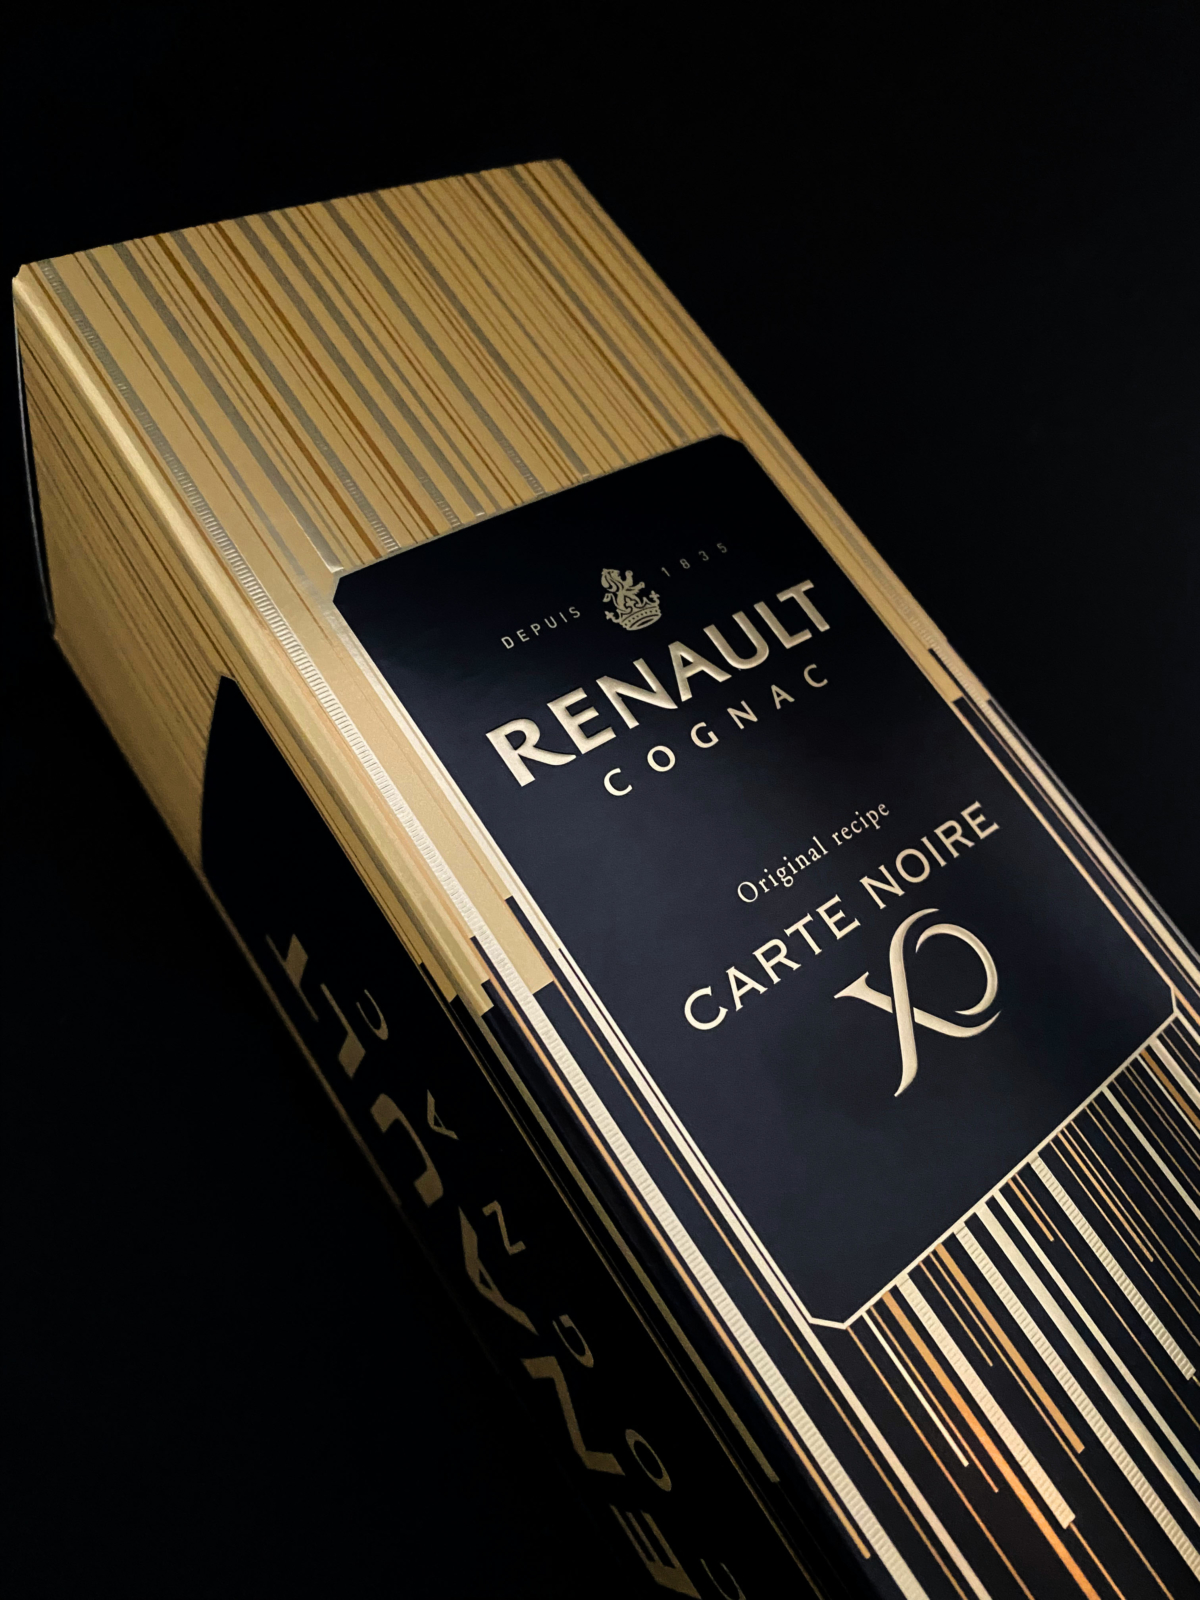 RENAULT - Un design pensé par l’agence de design de Paris Partisan du Sens.